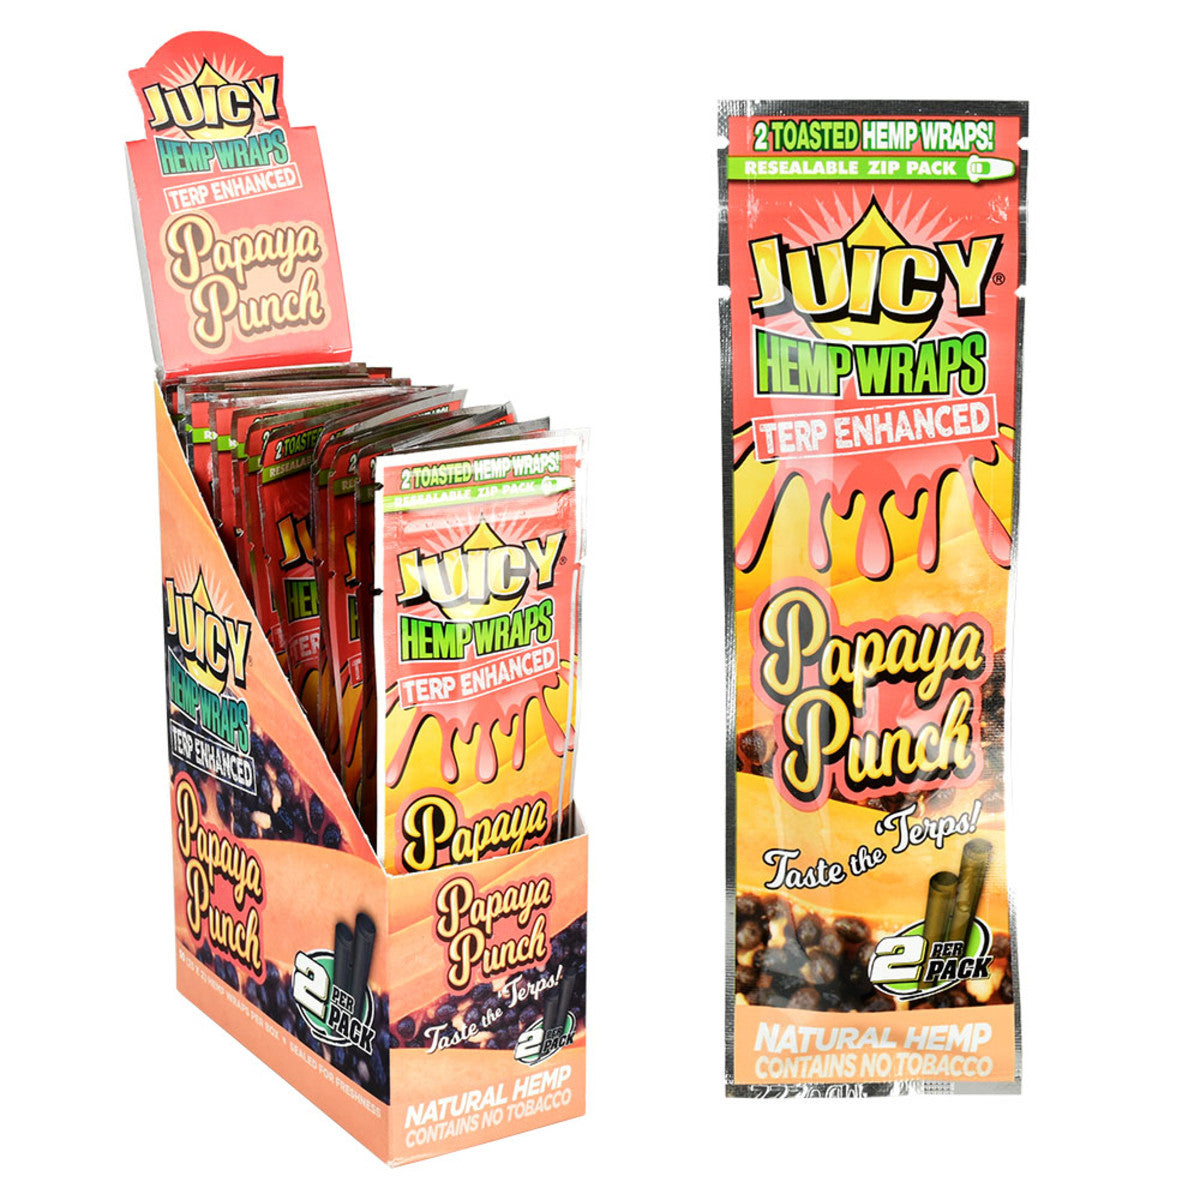 Juicy Hemp Wraps Terp Enhanced Papaya Punch Box